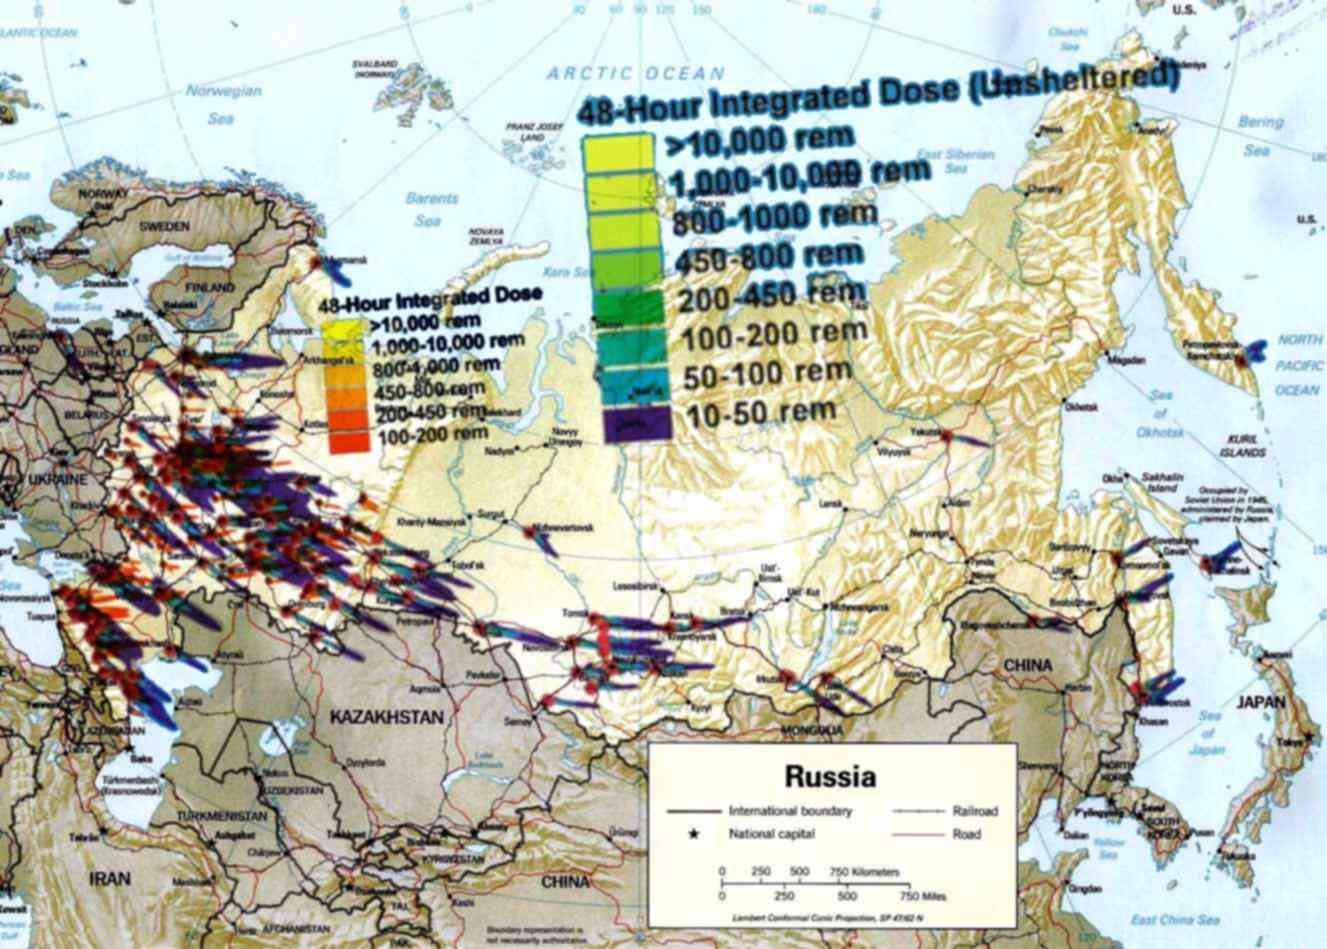 Цели ударов по россии. Цели ядерных ударов по России на карте. Карта цели США ядерных ударов в России. Цели в России для ядерного удара карта. Карта ядерных ударов США по России.